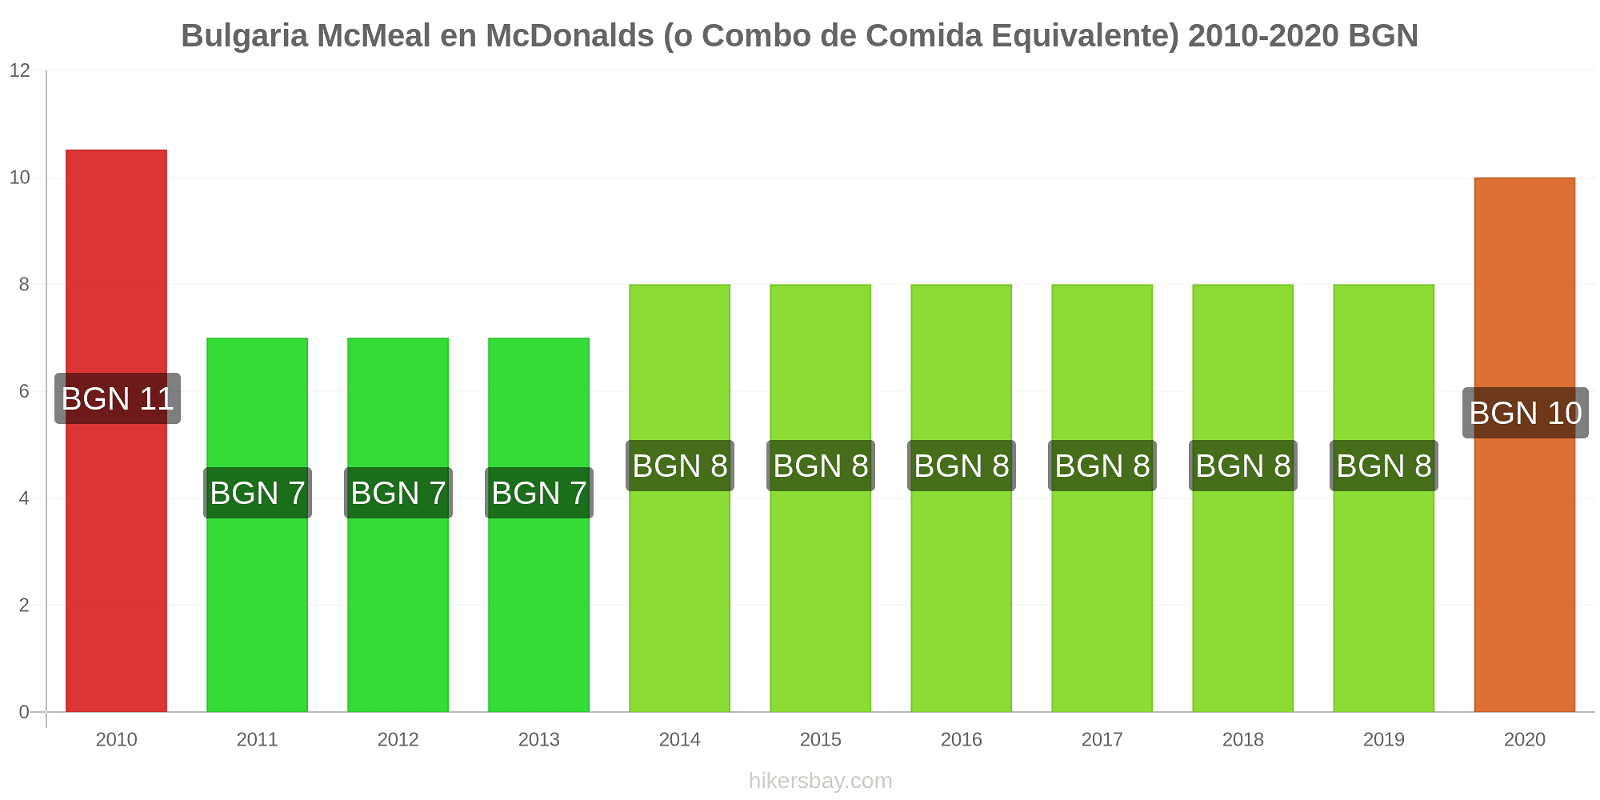 Bulgaria cambios de precios McMeal en McDonalds (o menú equivalente) hikersbay.com